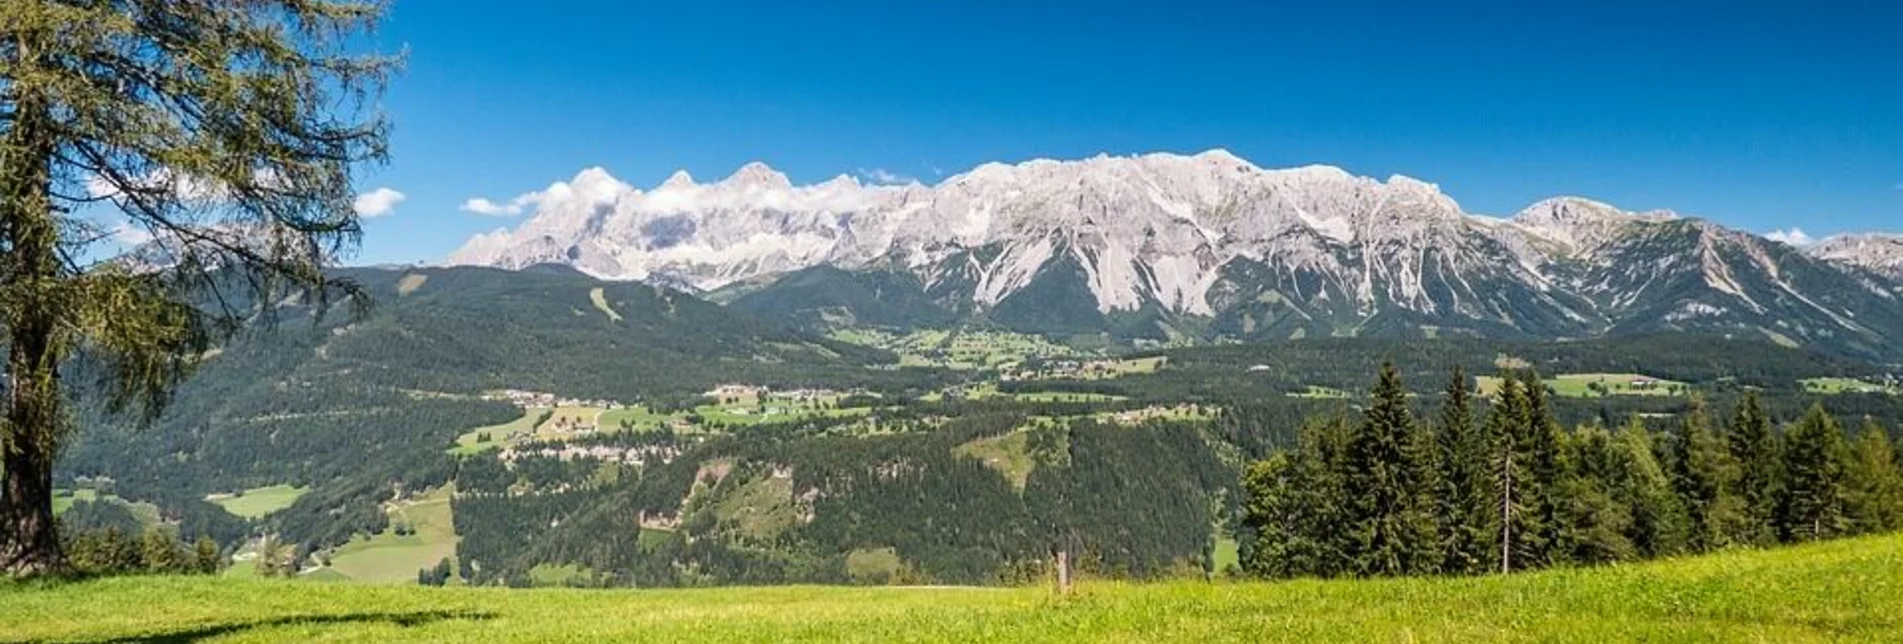 Mountainbike Bike & Hike Tour Planai (mit Lademöglichkeit) - Touren-Impression #1 | © Erlebnisregion Schladming-Dachstein